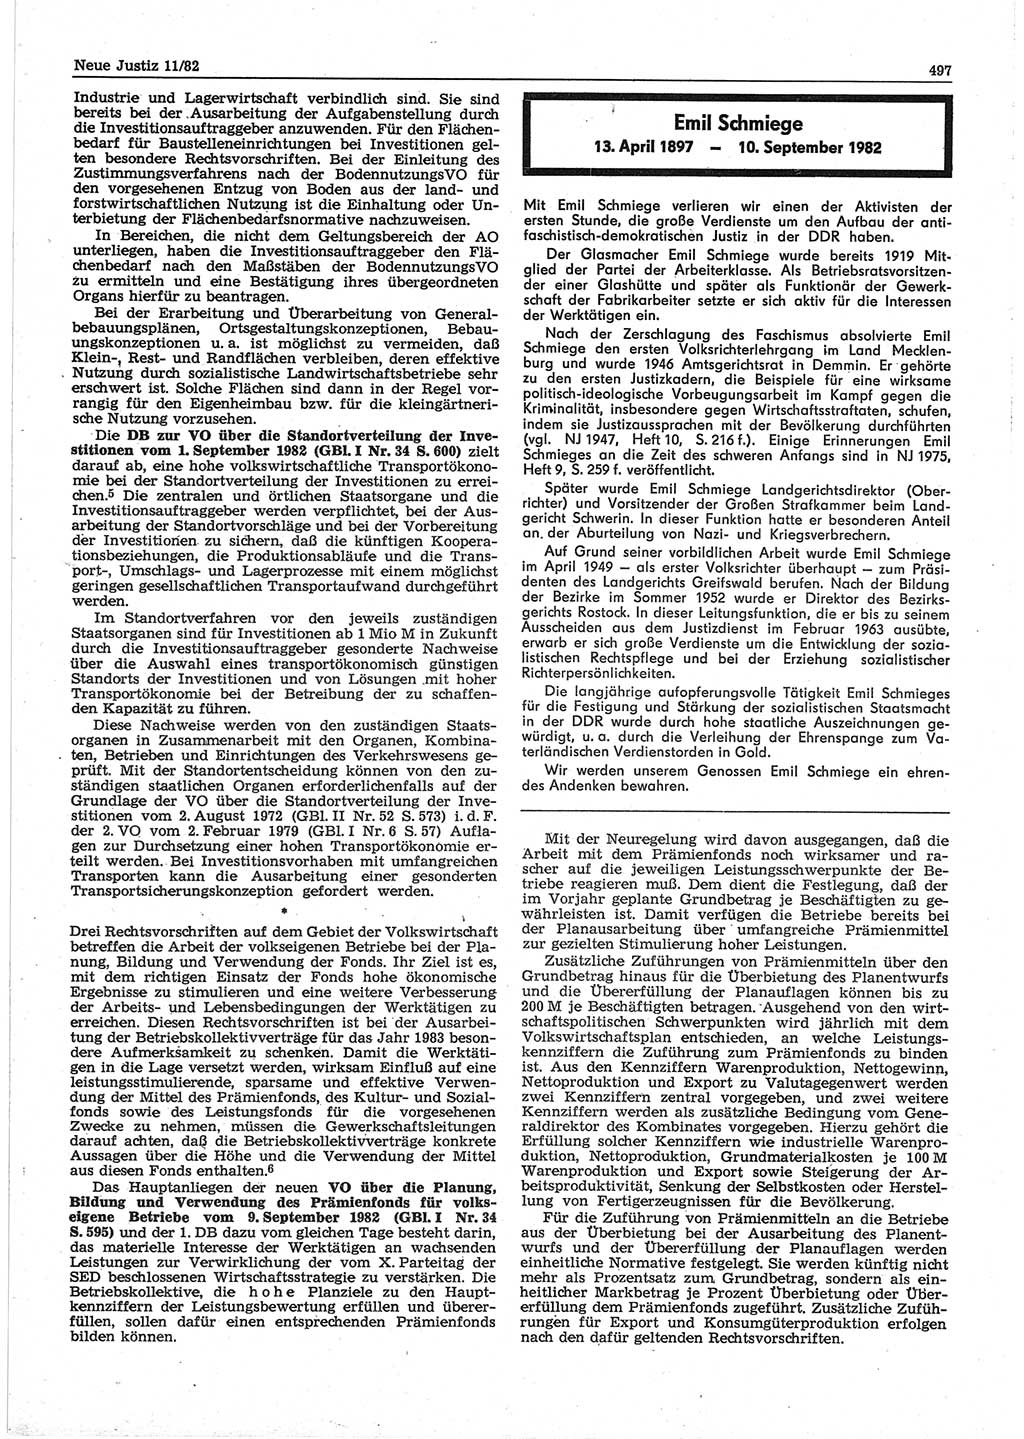 Neue Justiz (NJ), Zeitschrift für sozialistisches Recht und Gesetzlichkeit [Deutsche Demokratische Republik (DDR)], 36. Jahrgang 1982, Seite 497 (NJ DDR 1982, S. 497)